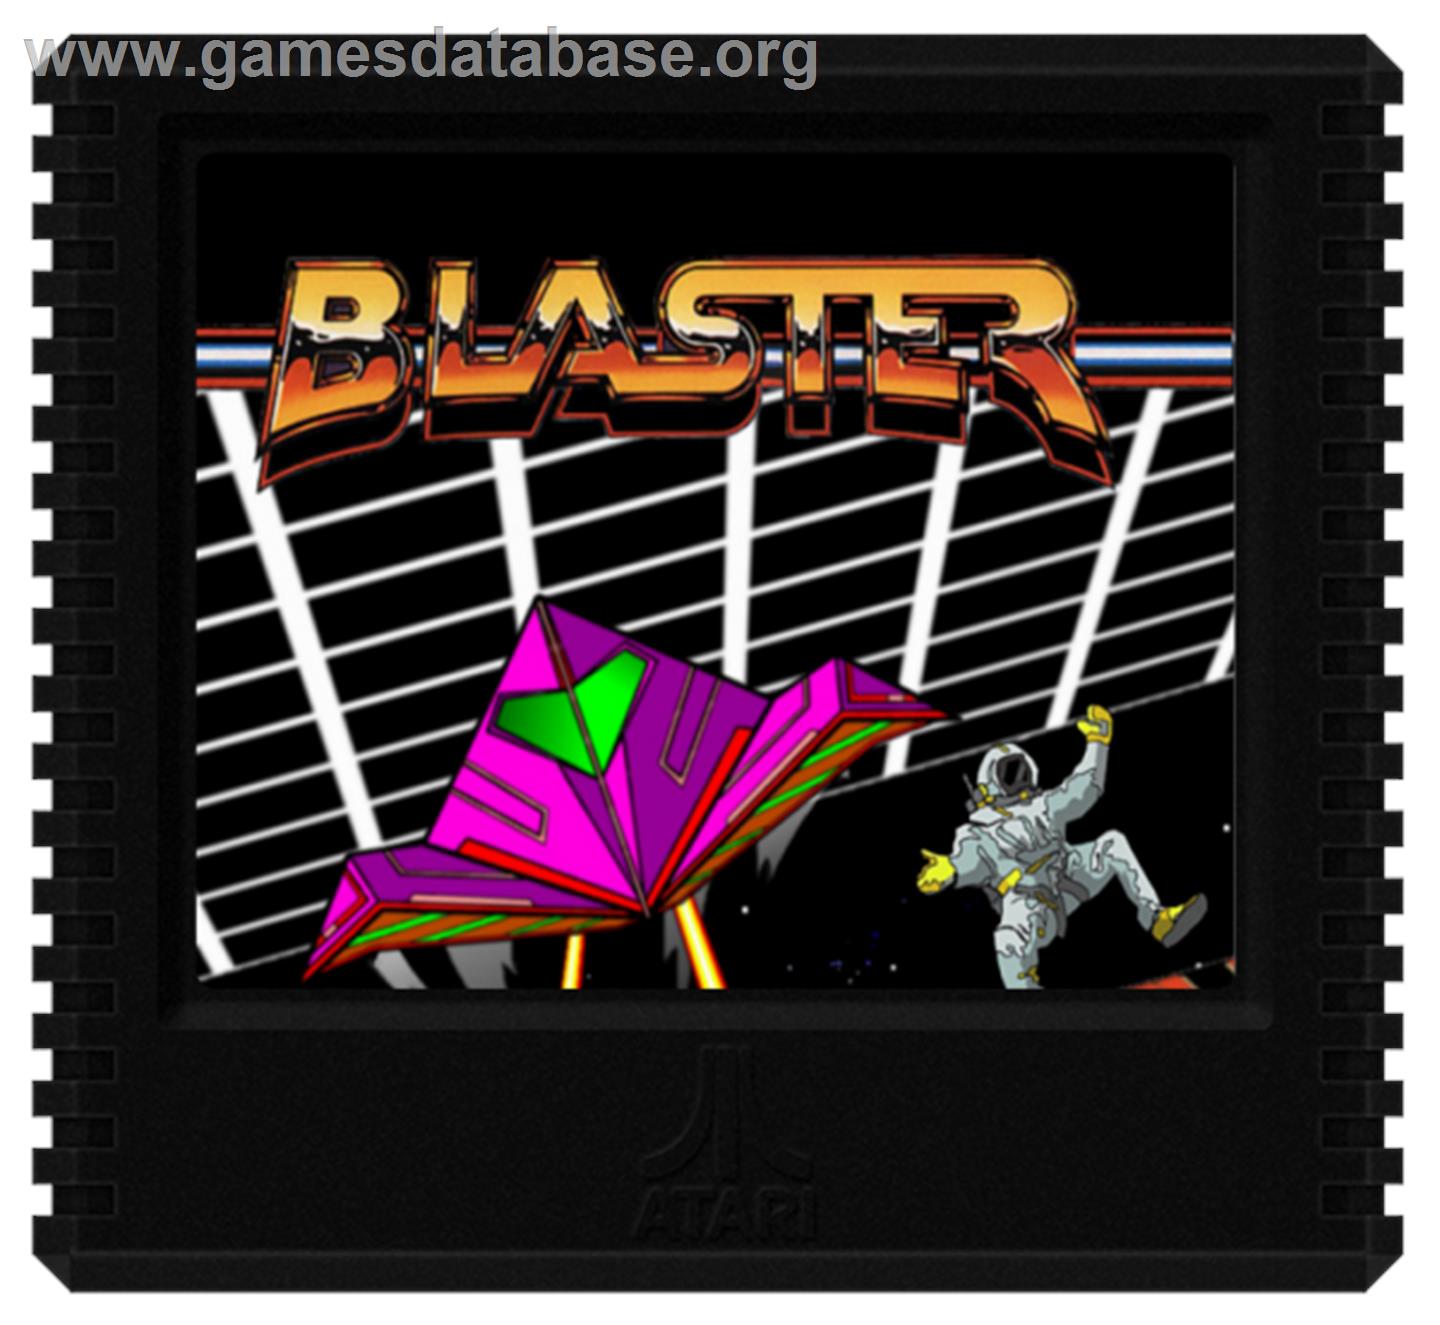 Blaster - Atari 5200 - Artwork - Cartridge